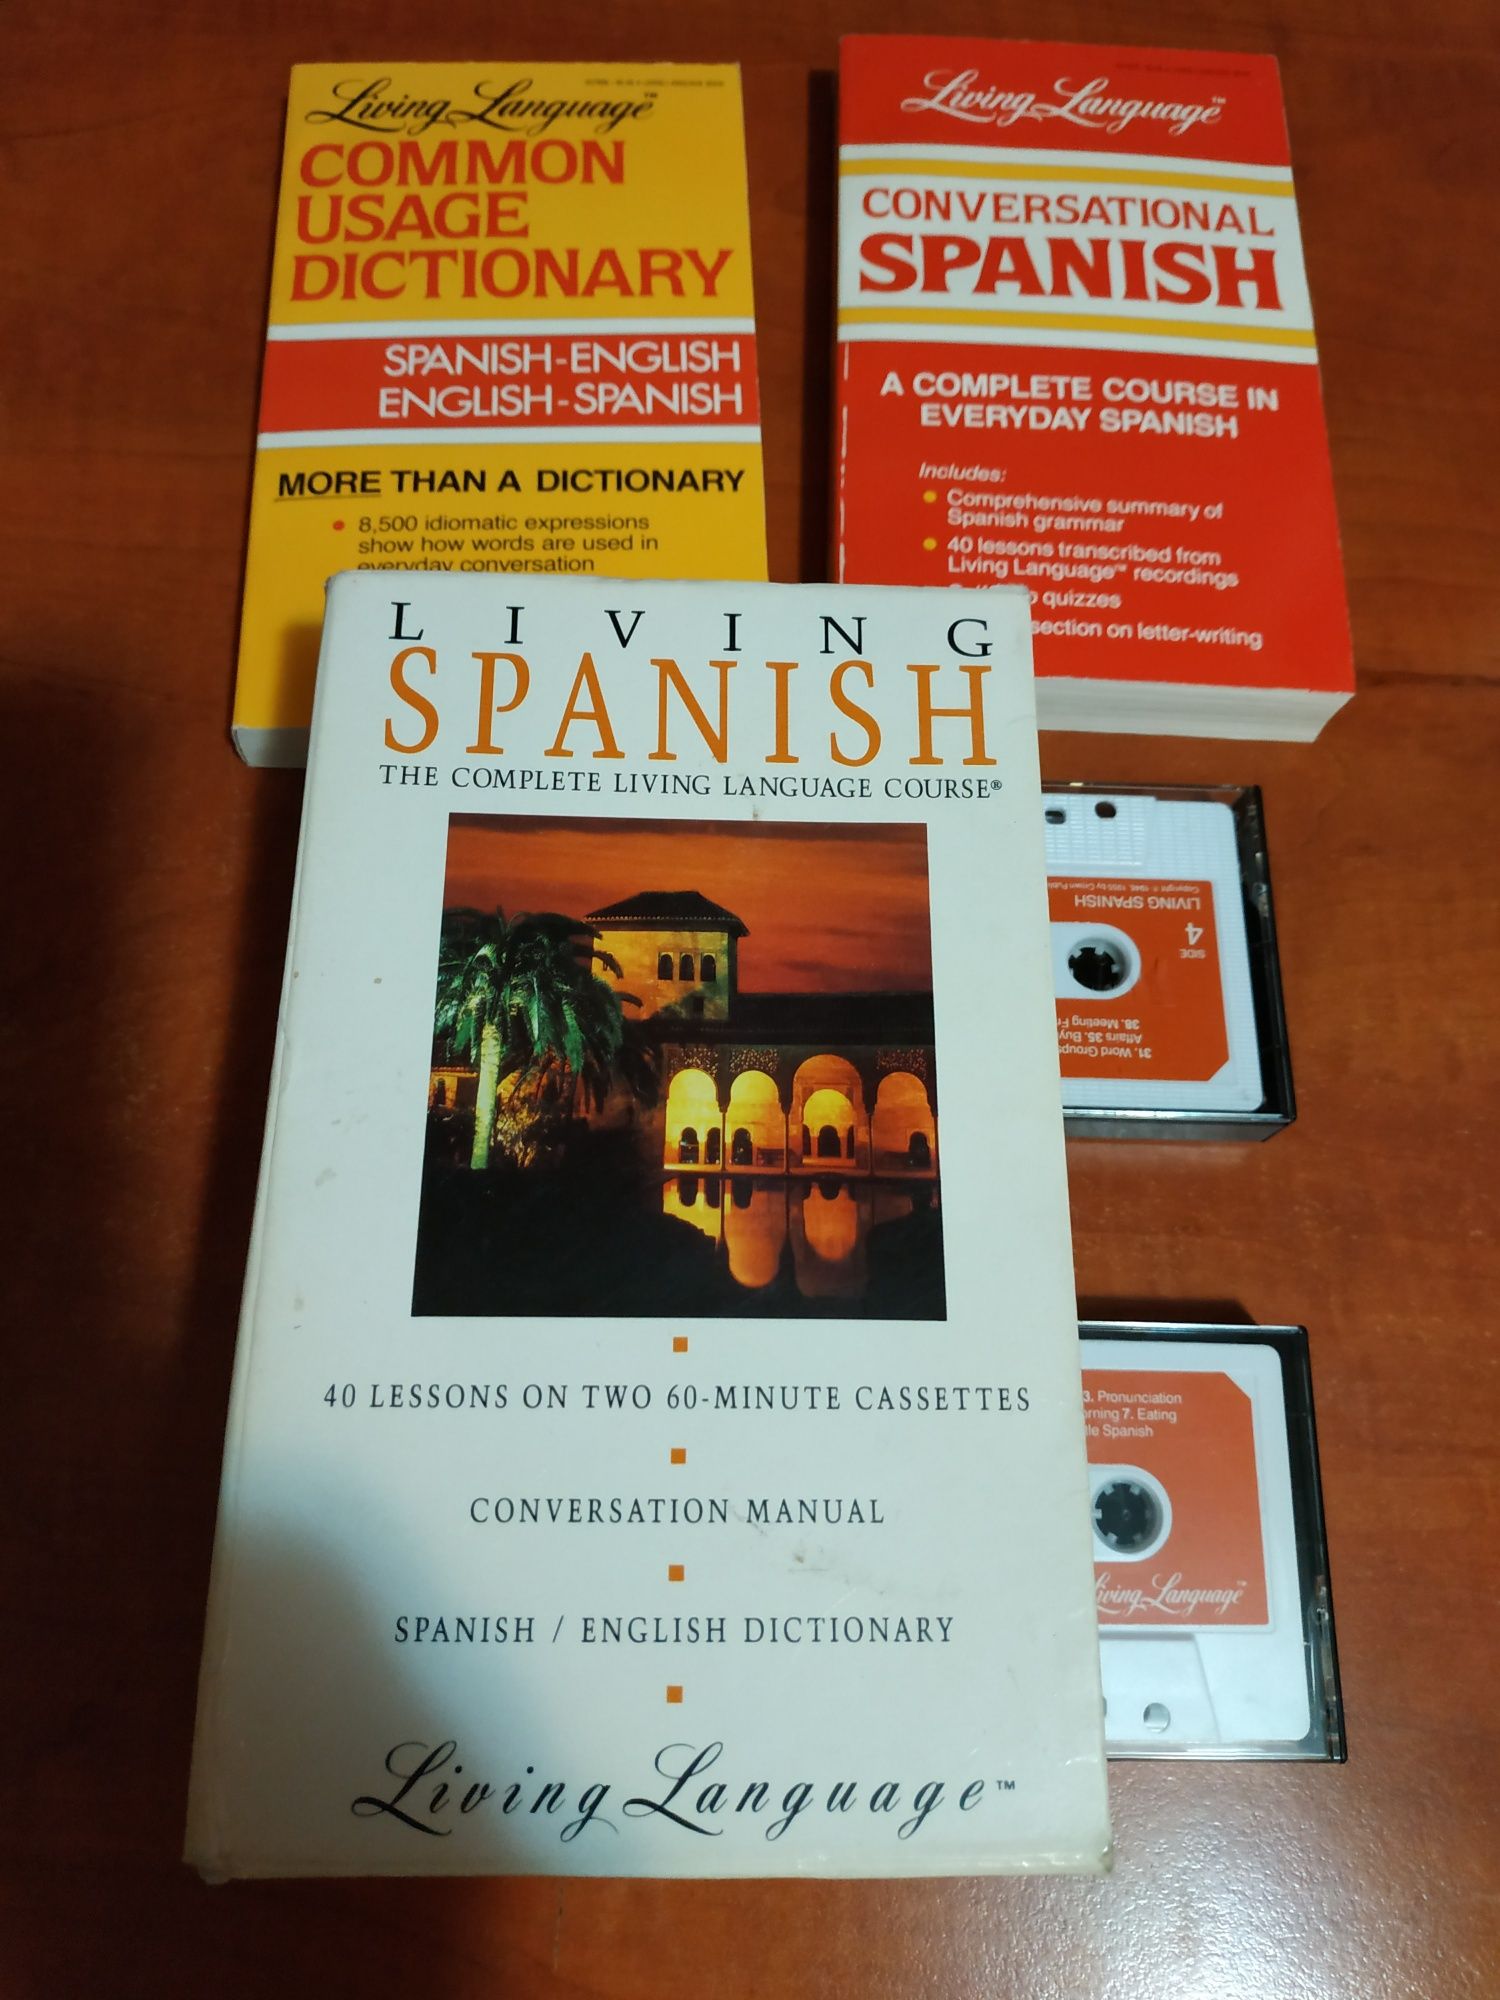 учебники и книги для изучения английского языка.